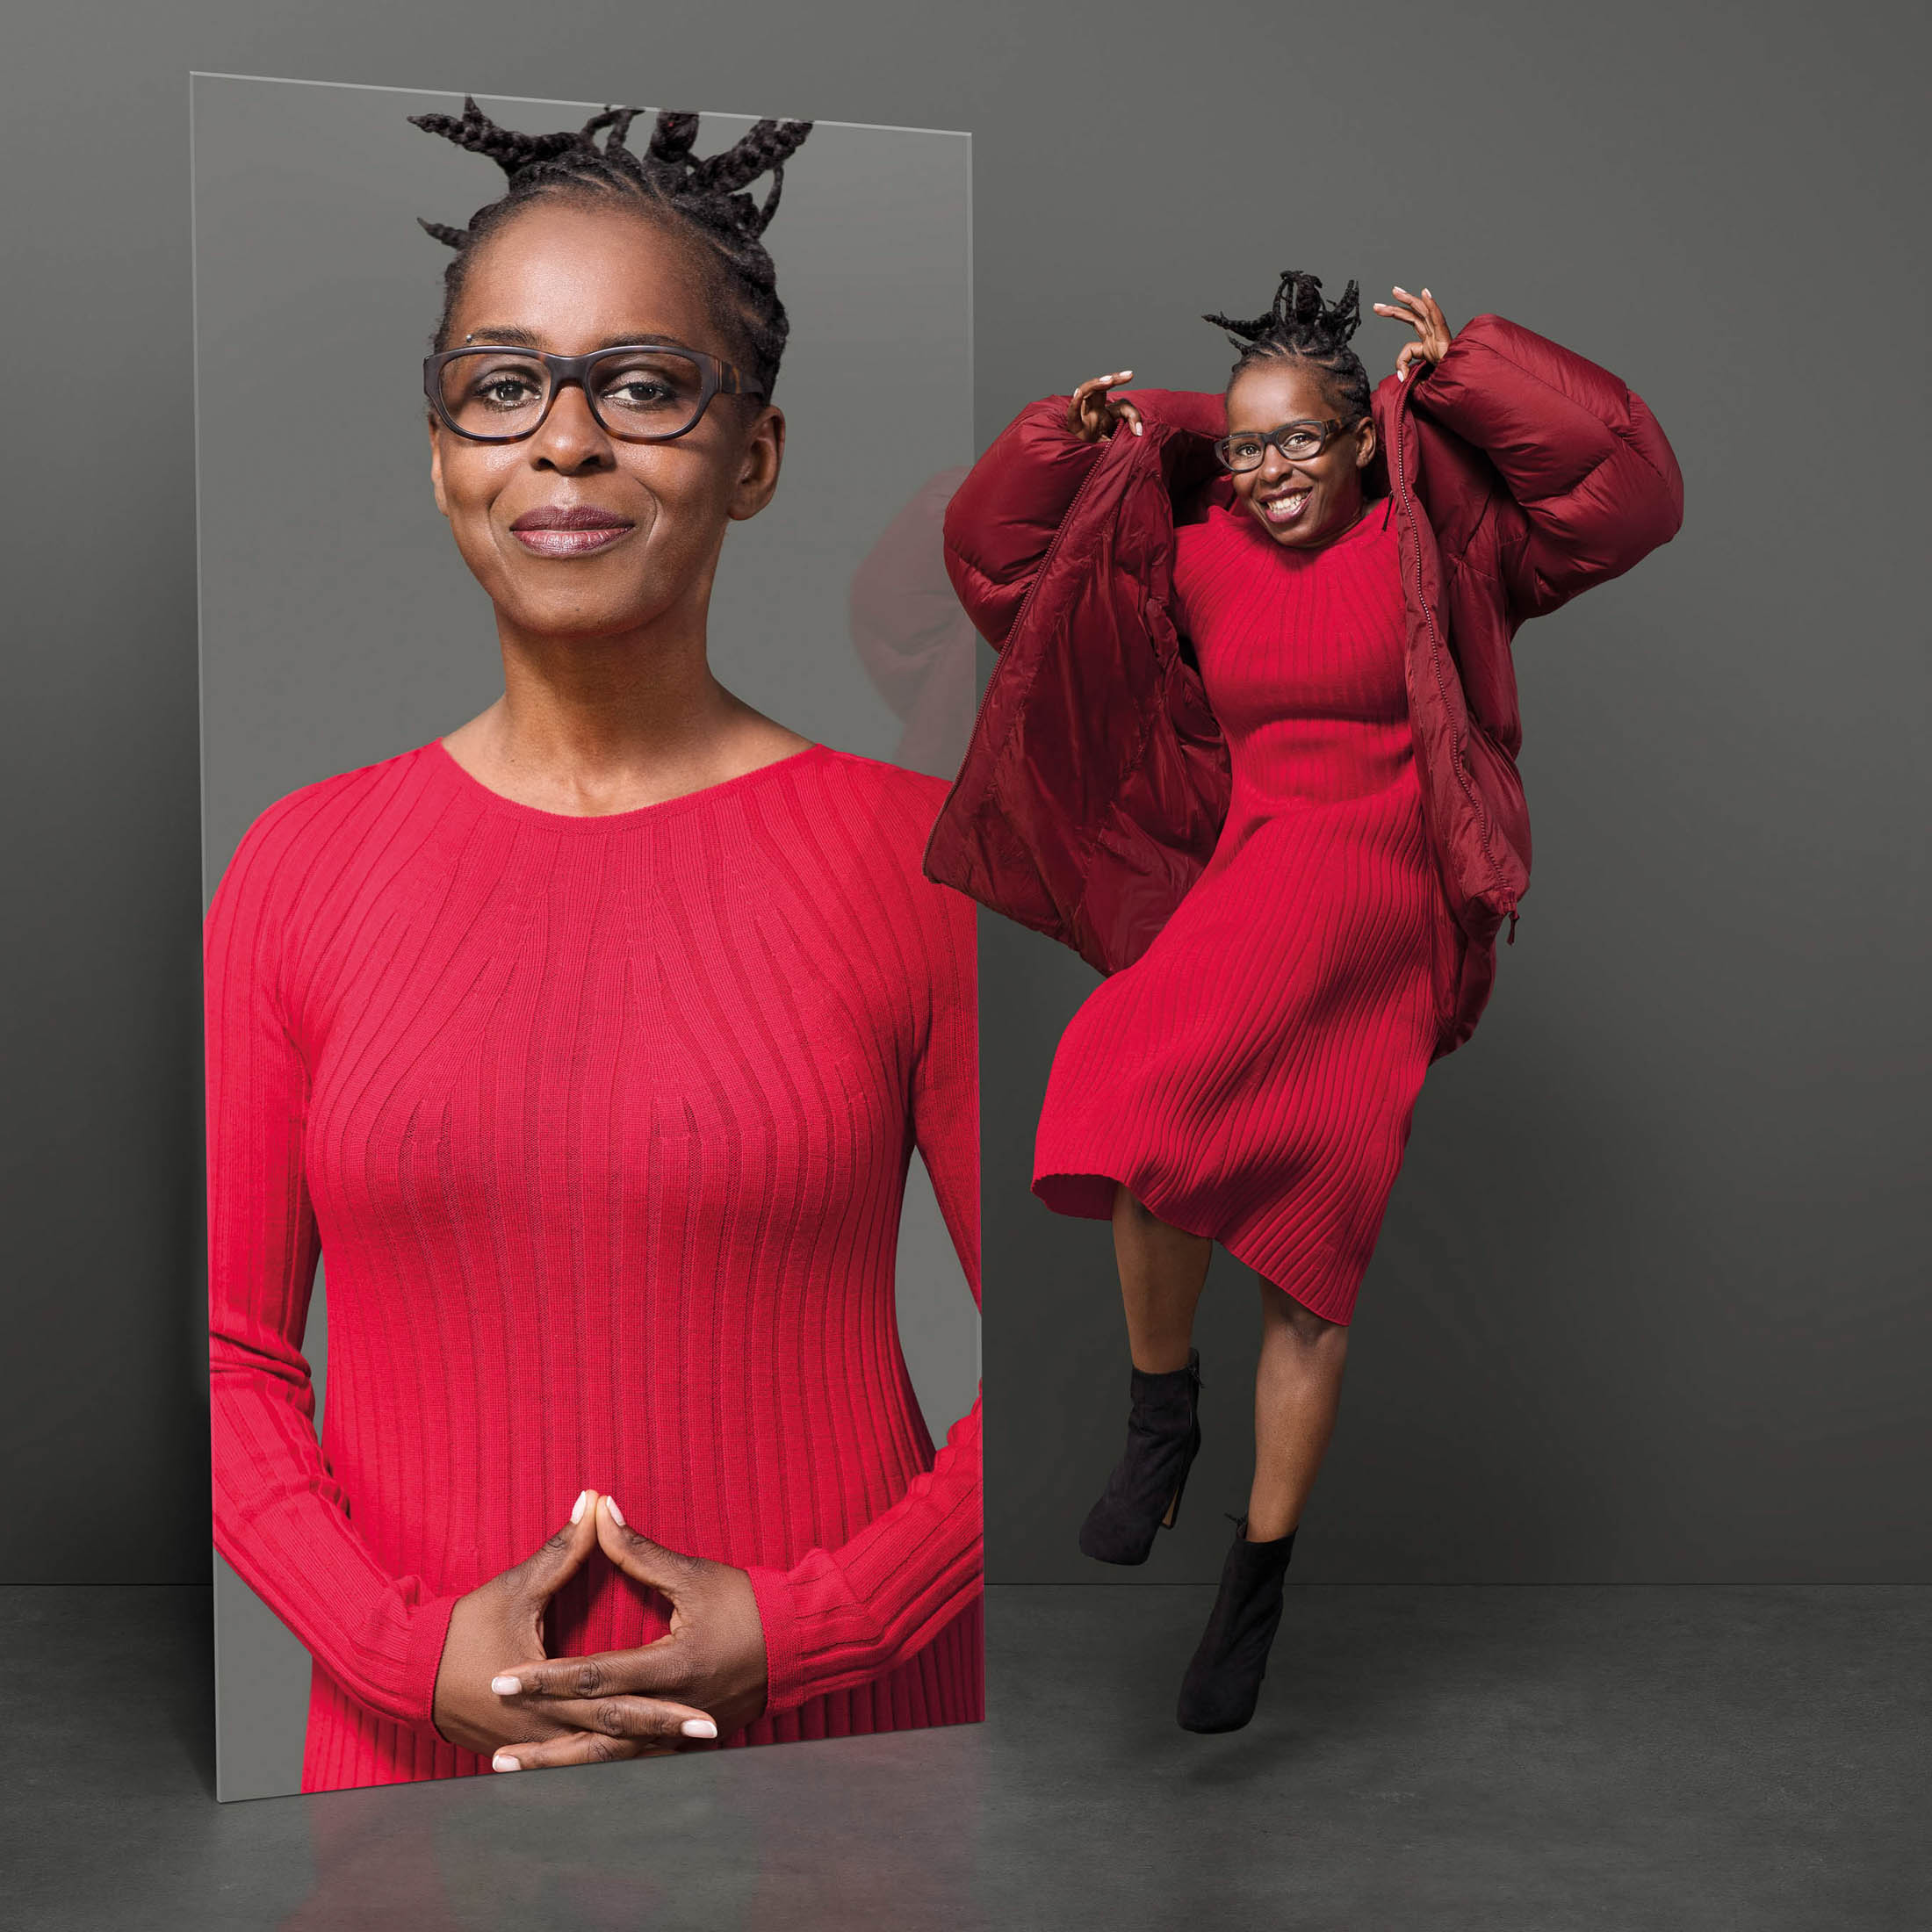 Eine Frau in einem roten Outfit wird in einem Spiegel reflektiert und zeigt zwei Posen: Eine, in der sie ruhig mit gefalteten Händen steht und eine andere, in der sie freudig hüpft und eine verspielte Geste macht. © Fotografie Tomas Rodriguez